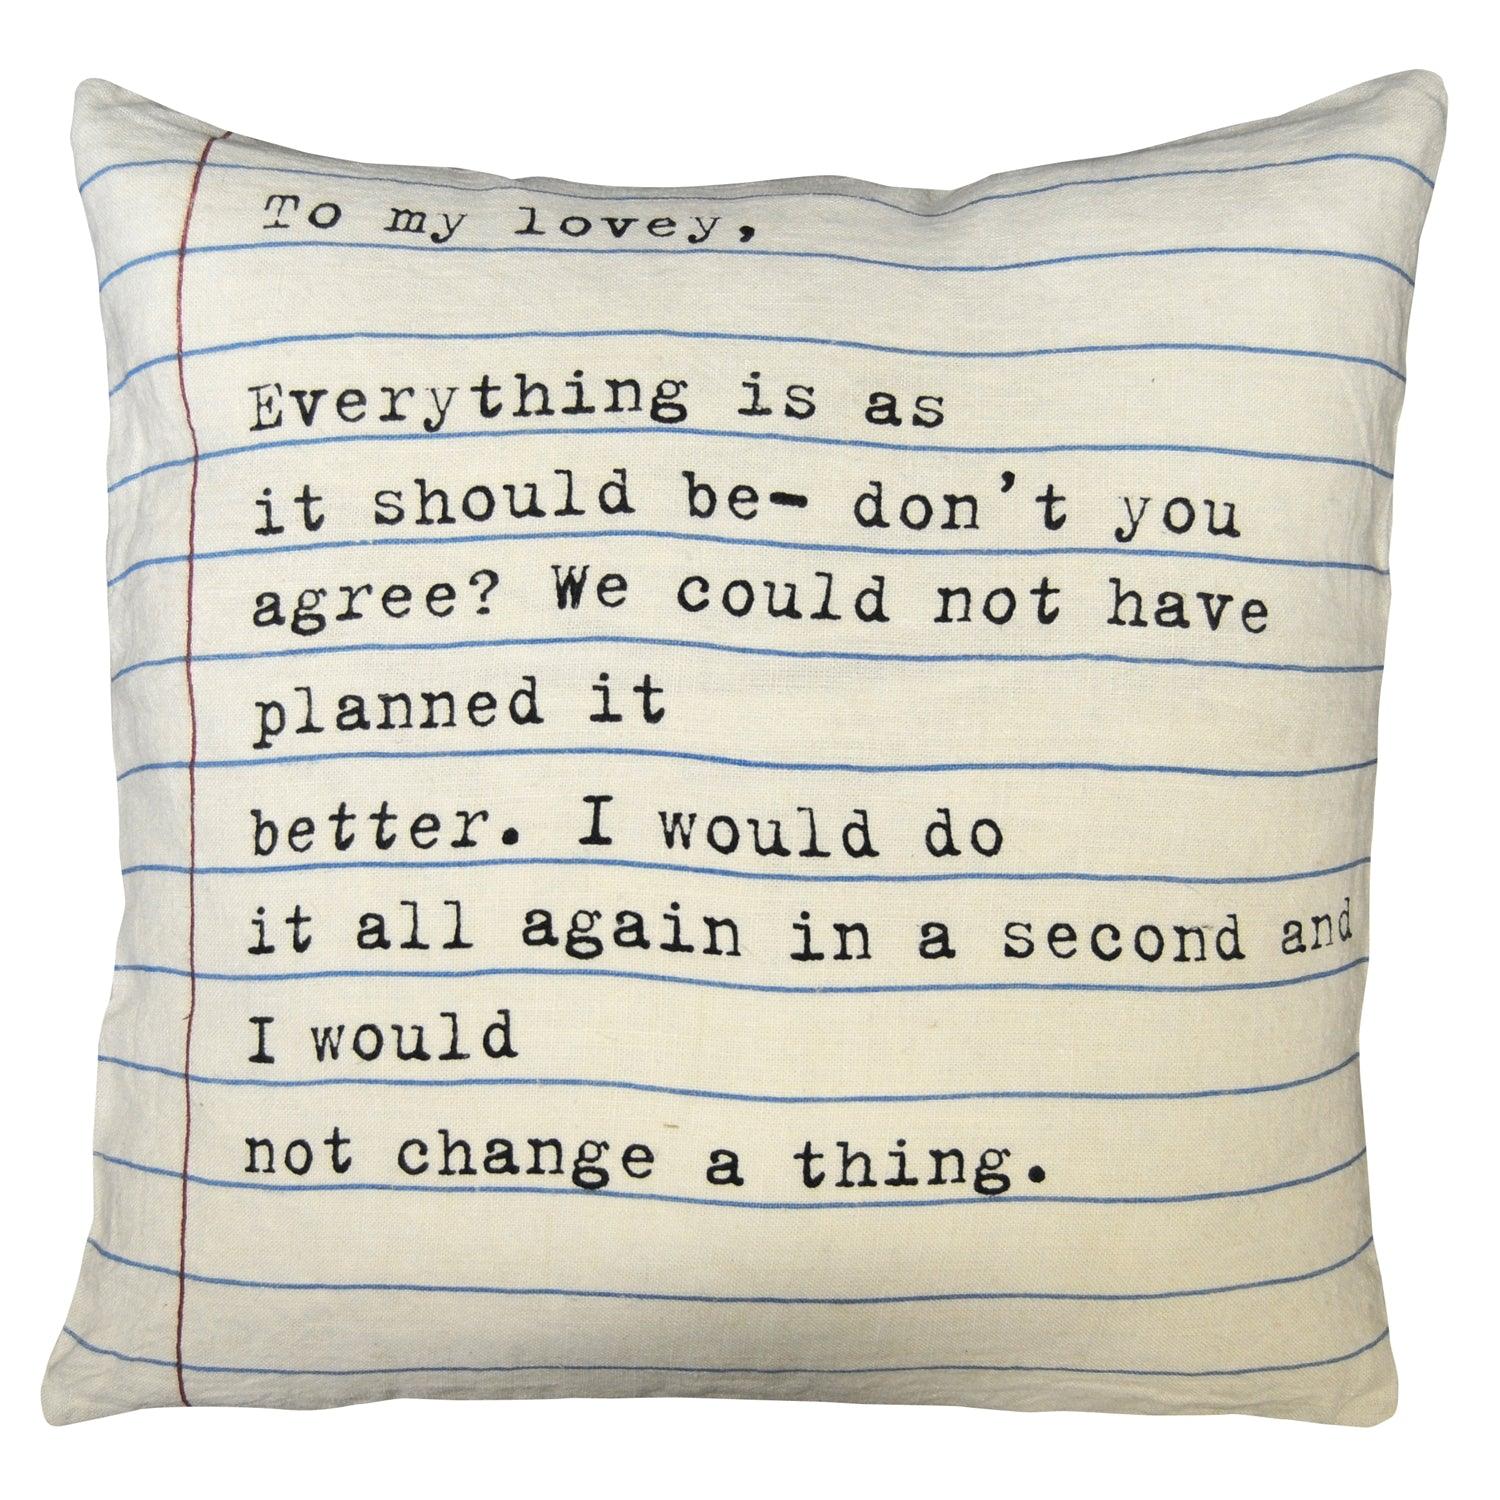 Pillows & Home Textiles